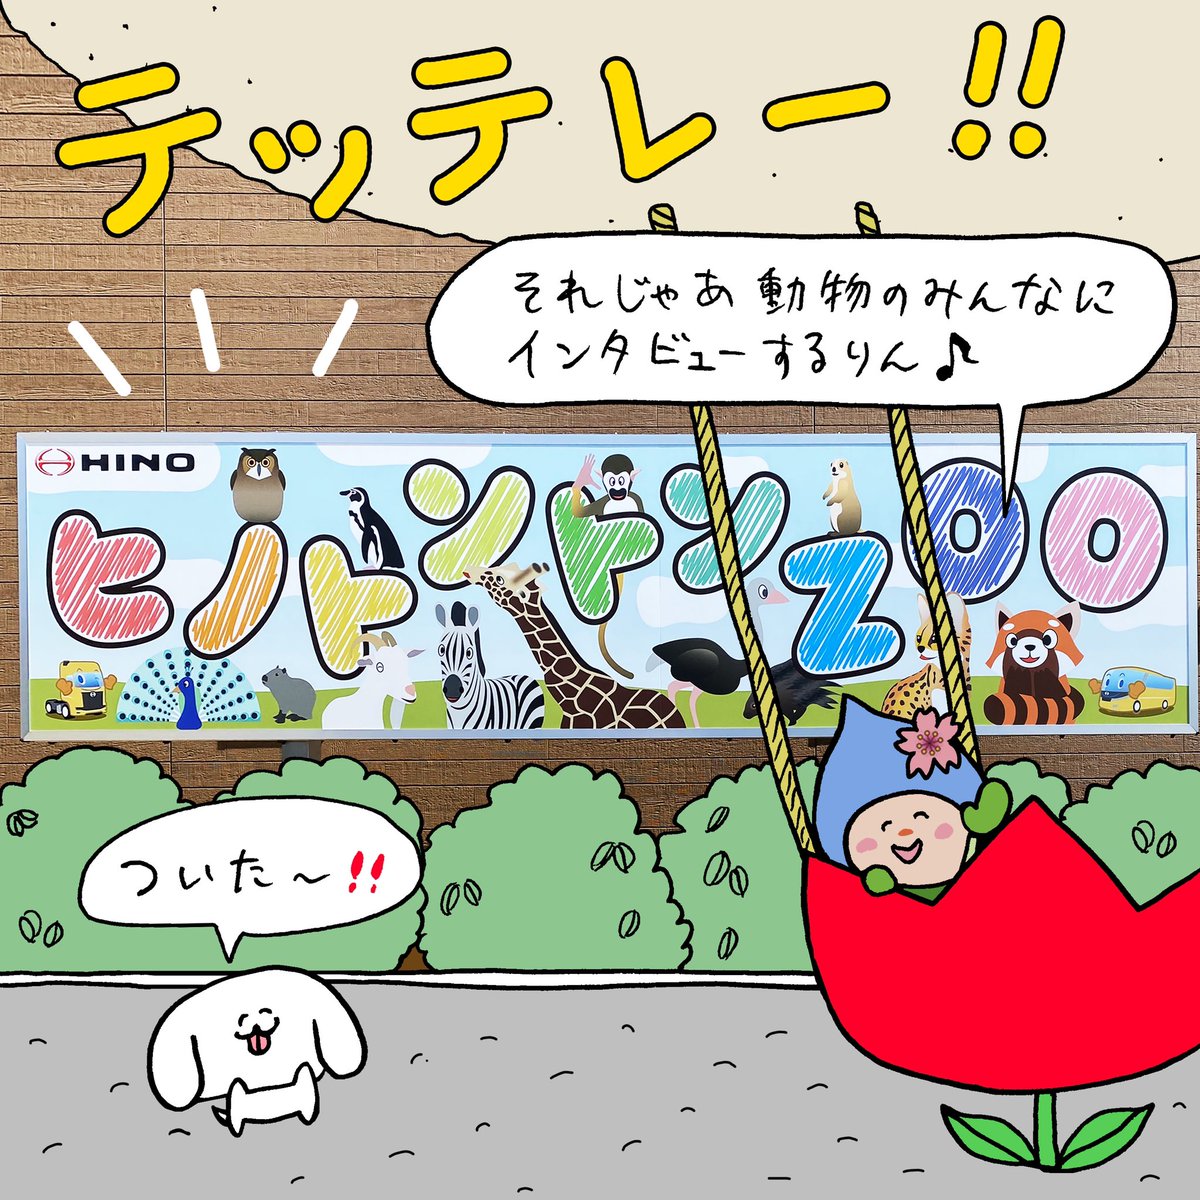 ぺろちと東京都羽村市さんのコラボ漫画2回目が公開されました、色んな動物が登場します。ちなみに、最後の伏線に気づきましたか? 

コチラより。
↓
https://t.co/0Den1IR1yH 